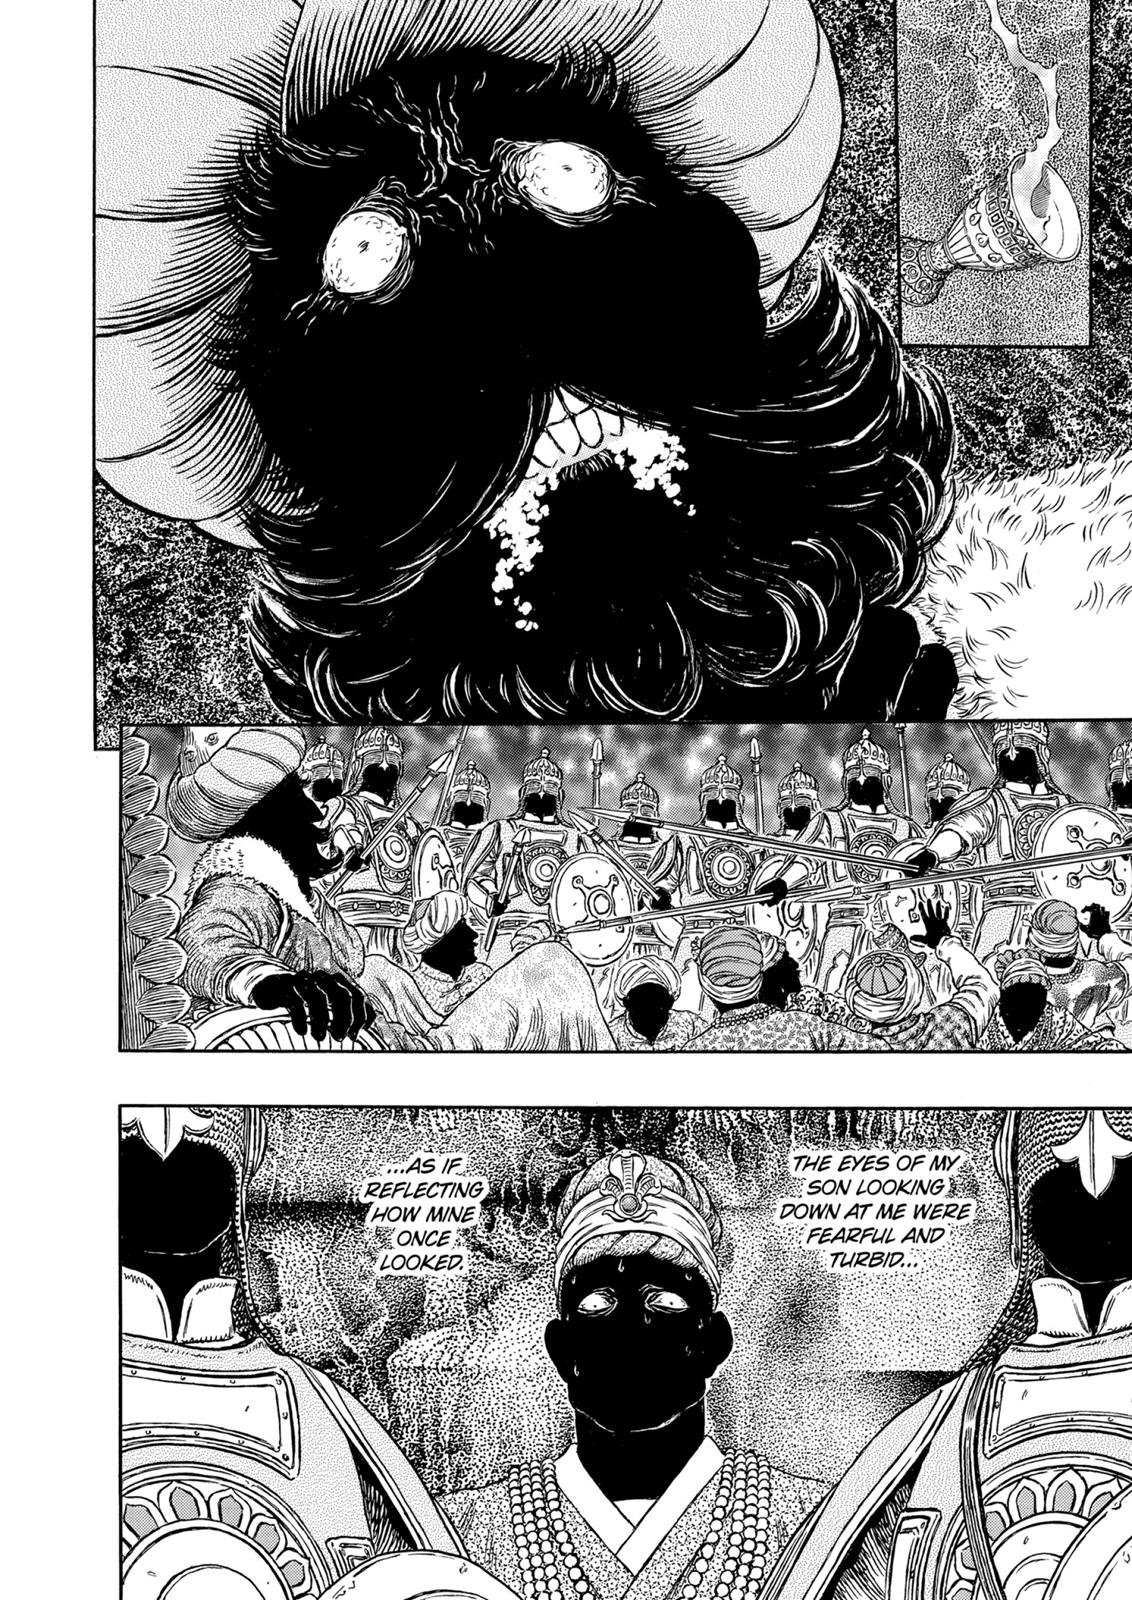 Berserk Manga Chapter 303 image 07